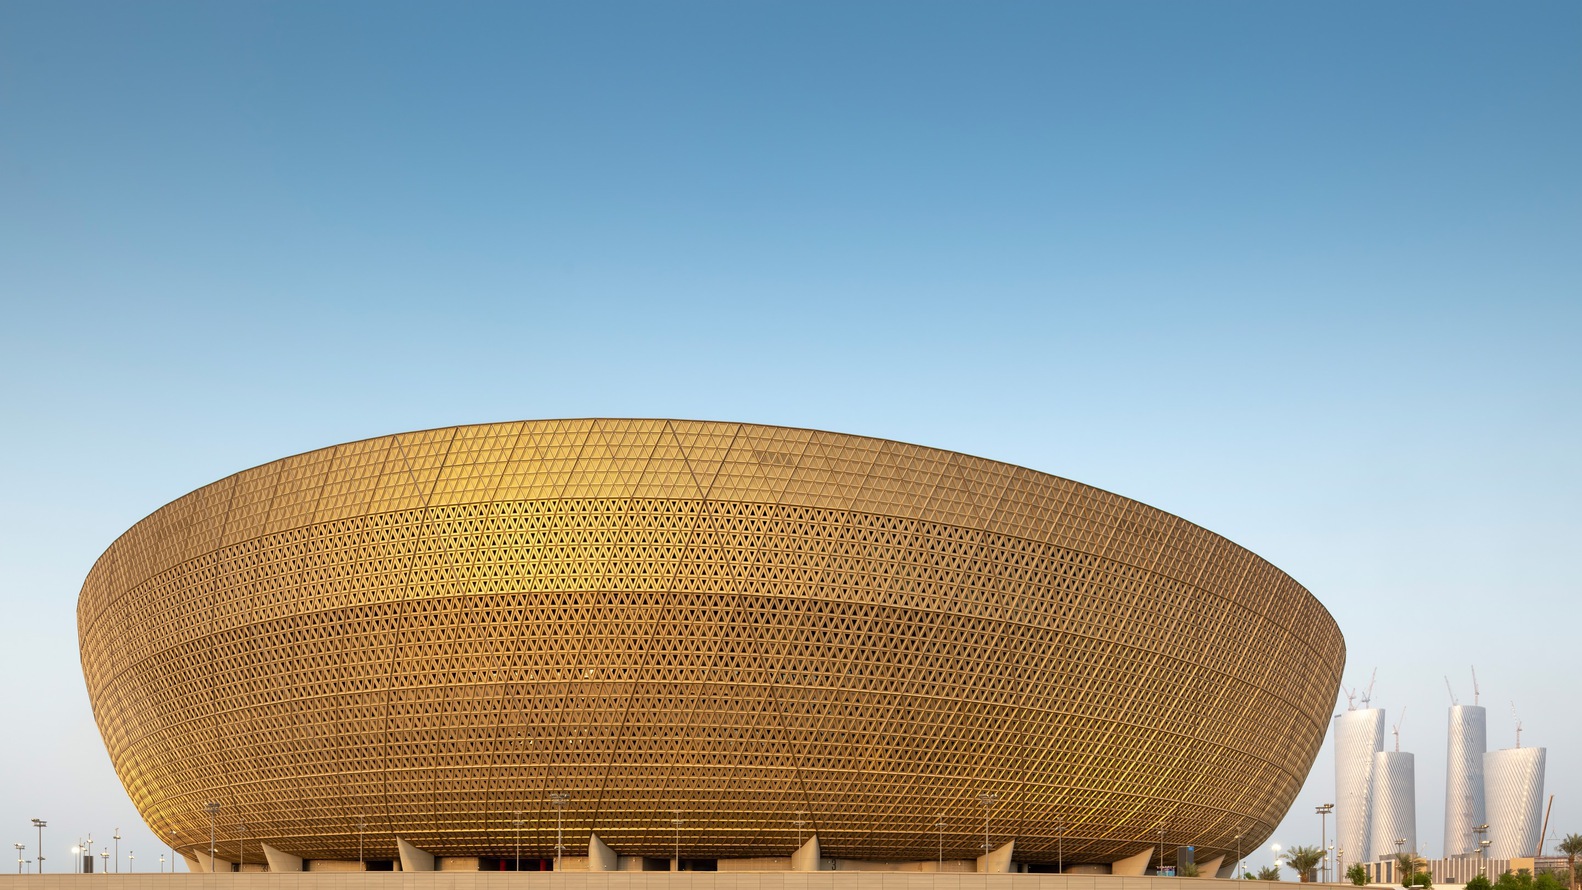 Глобальные перспективы: изучение разнообразных проектов спортивной архитектуры в преддверии Олимпийских игр 2024 года в Париже